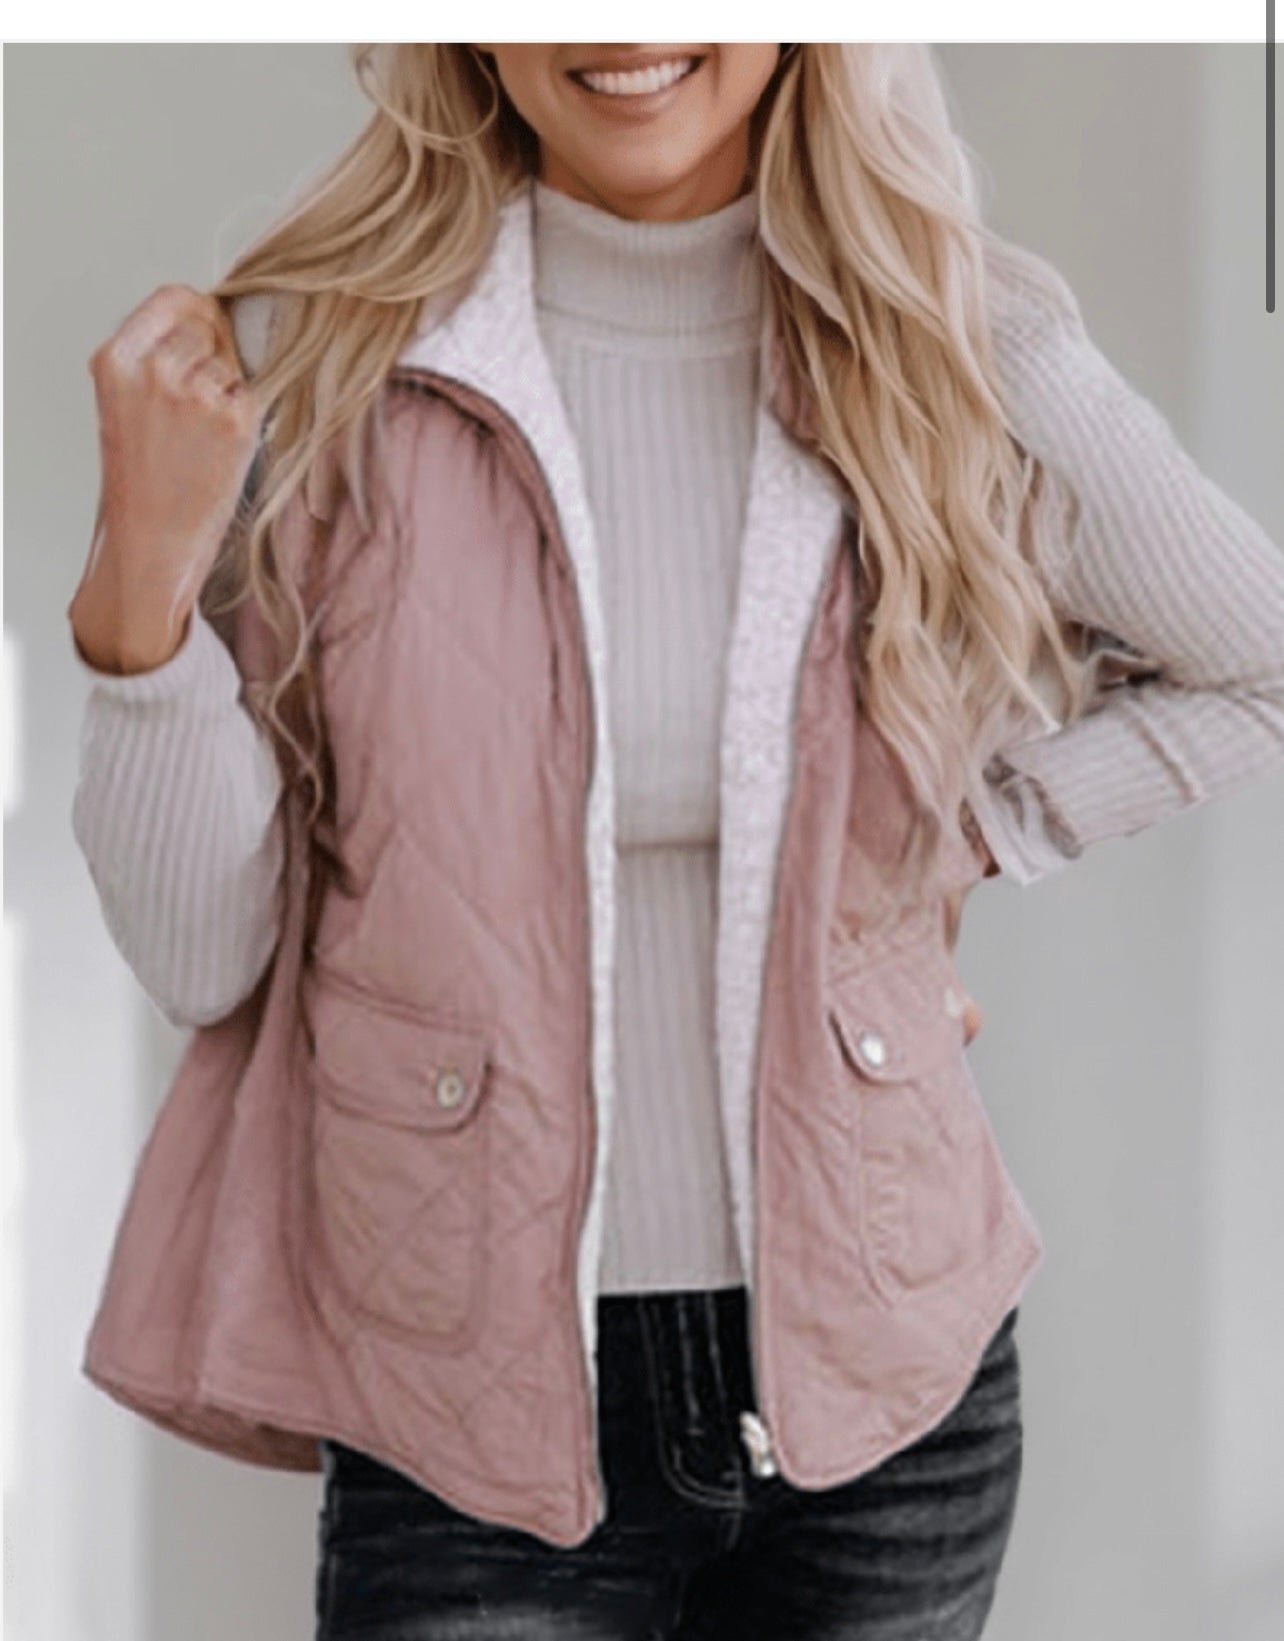 Pink Fleece Lined vest